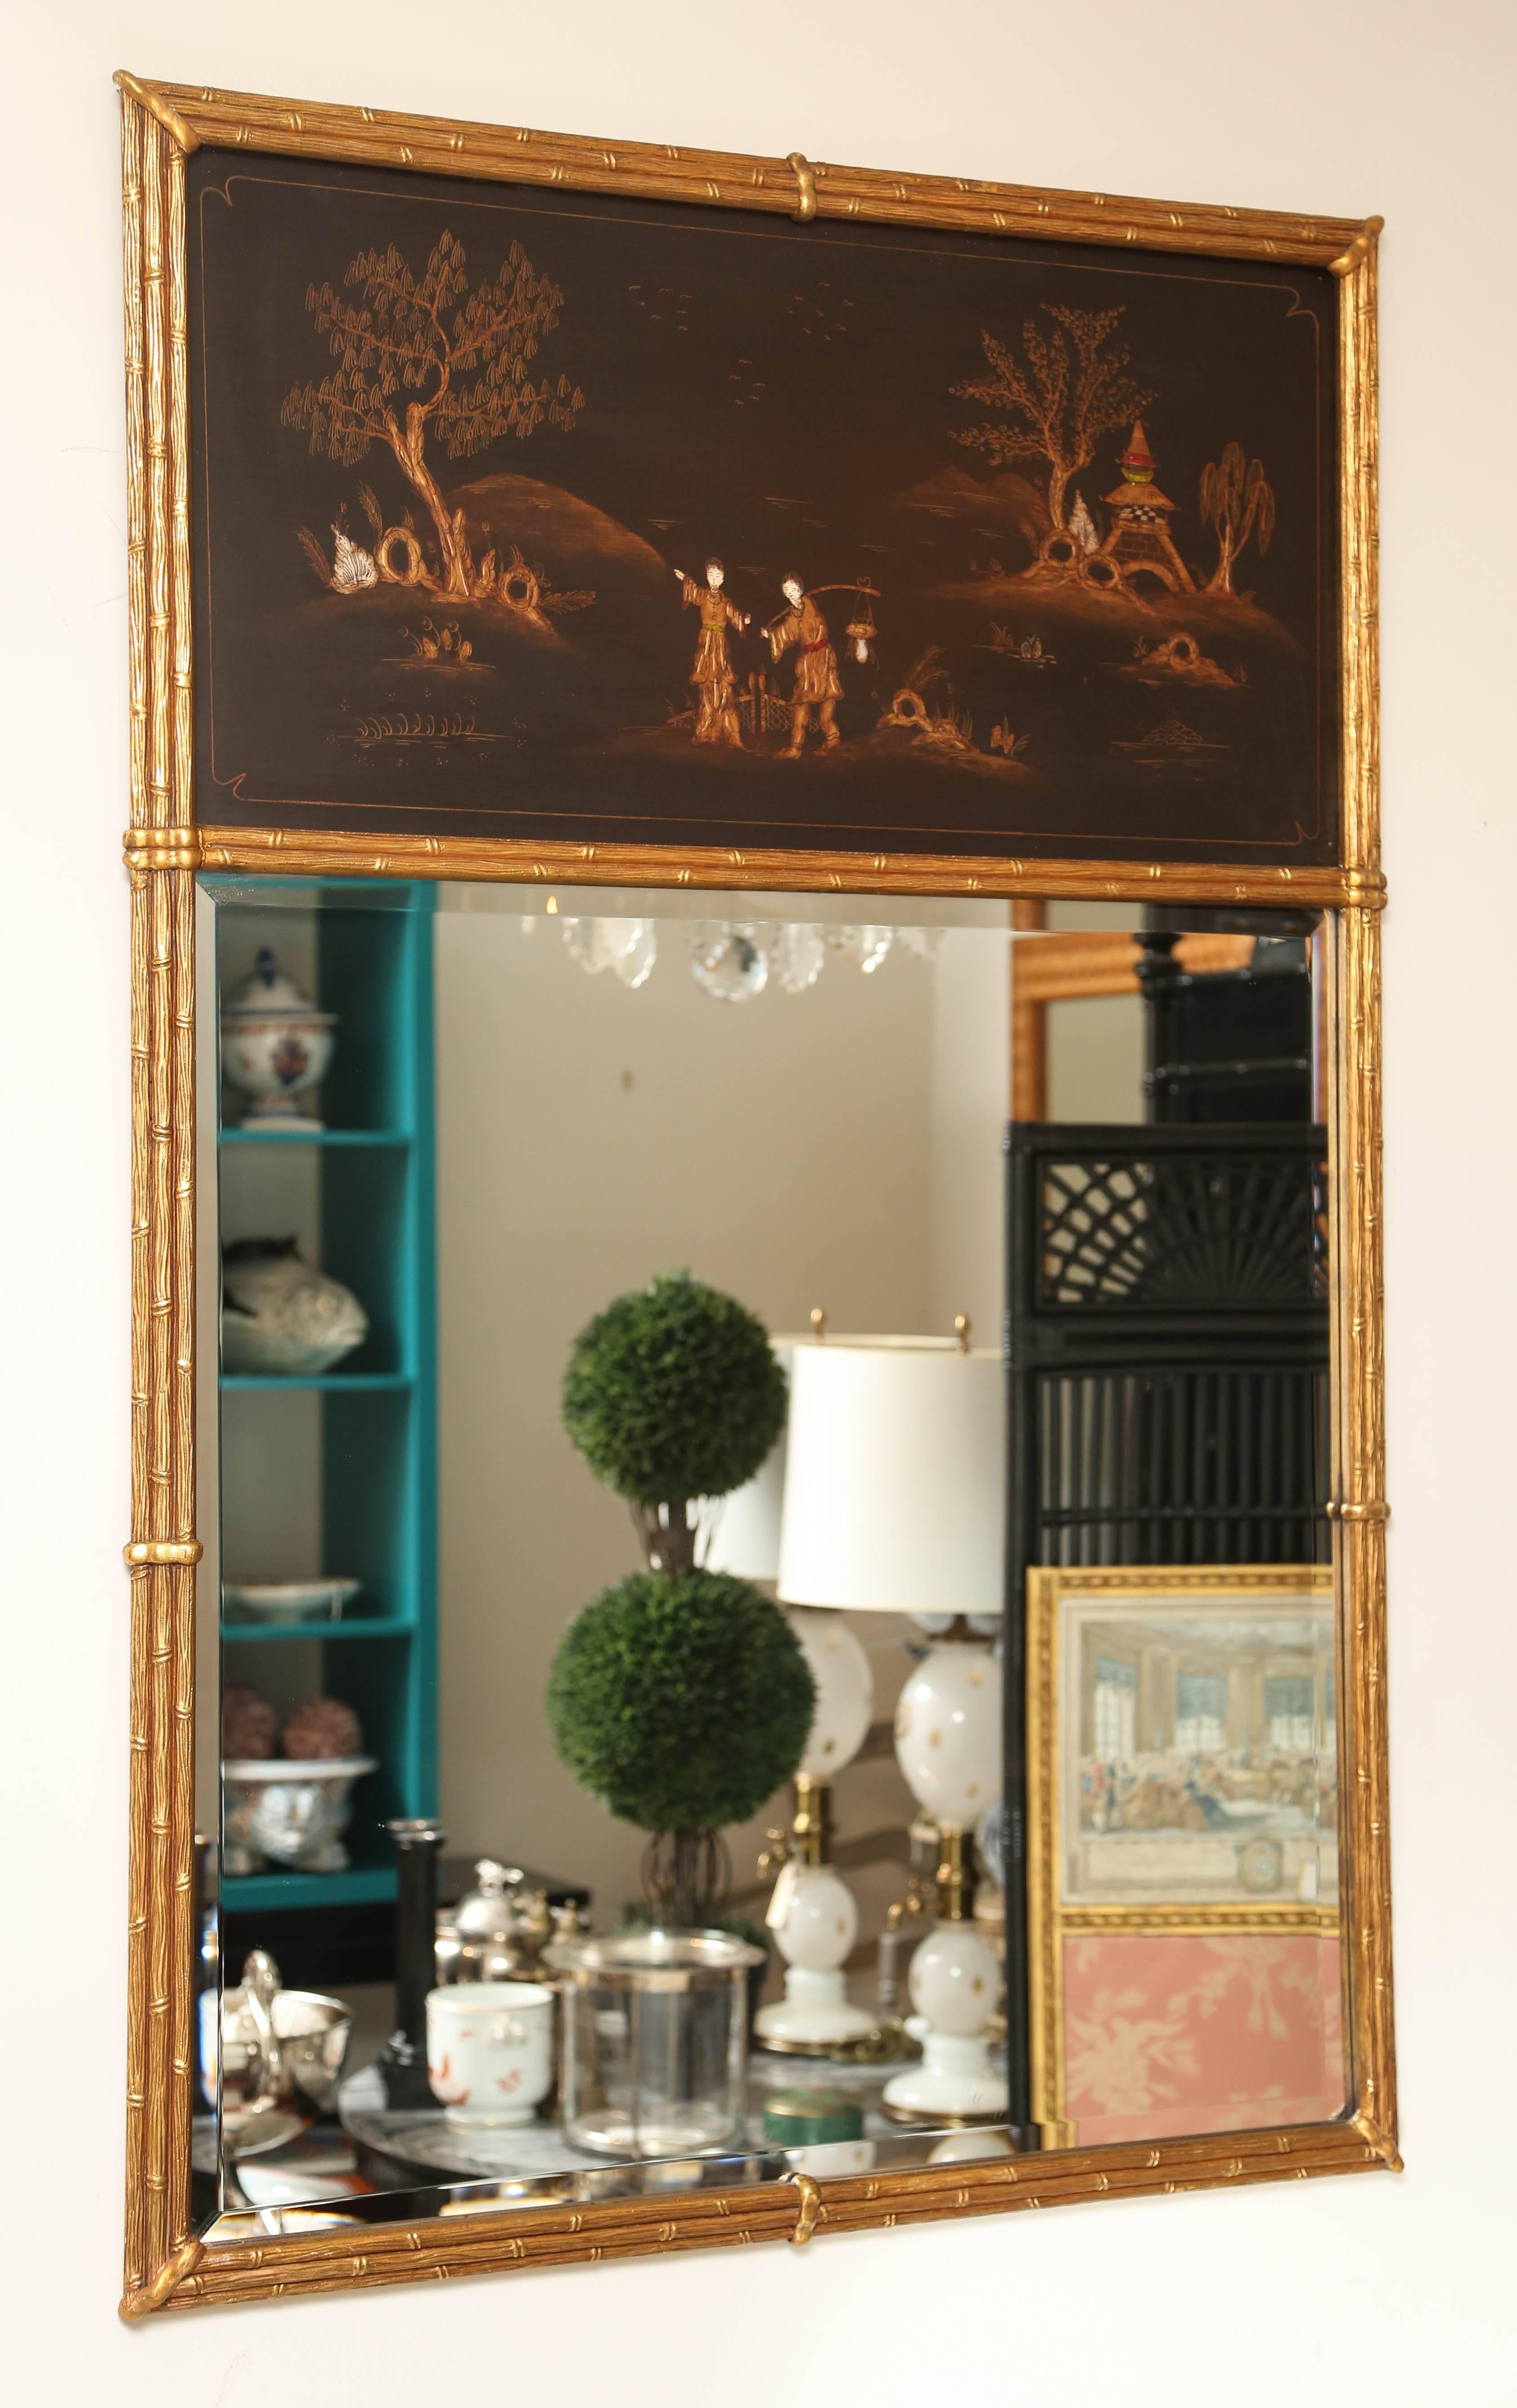 Miroir à trumeau de chinoiserie classique avec de jolis décors peints à l'orientale. Cadre en faux bambou en bois doré.